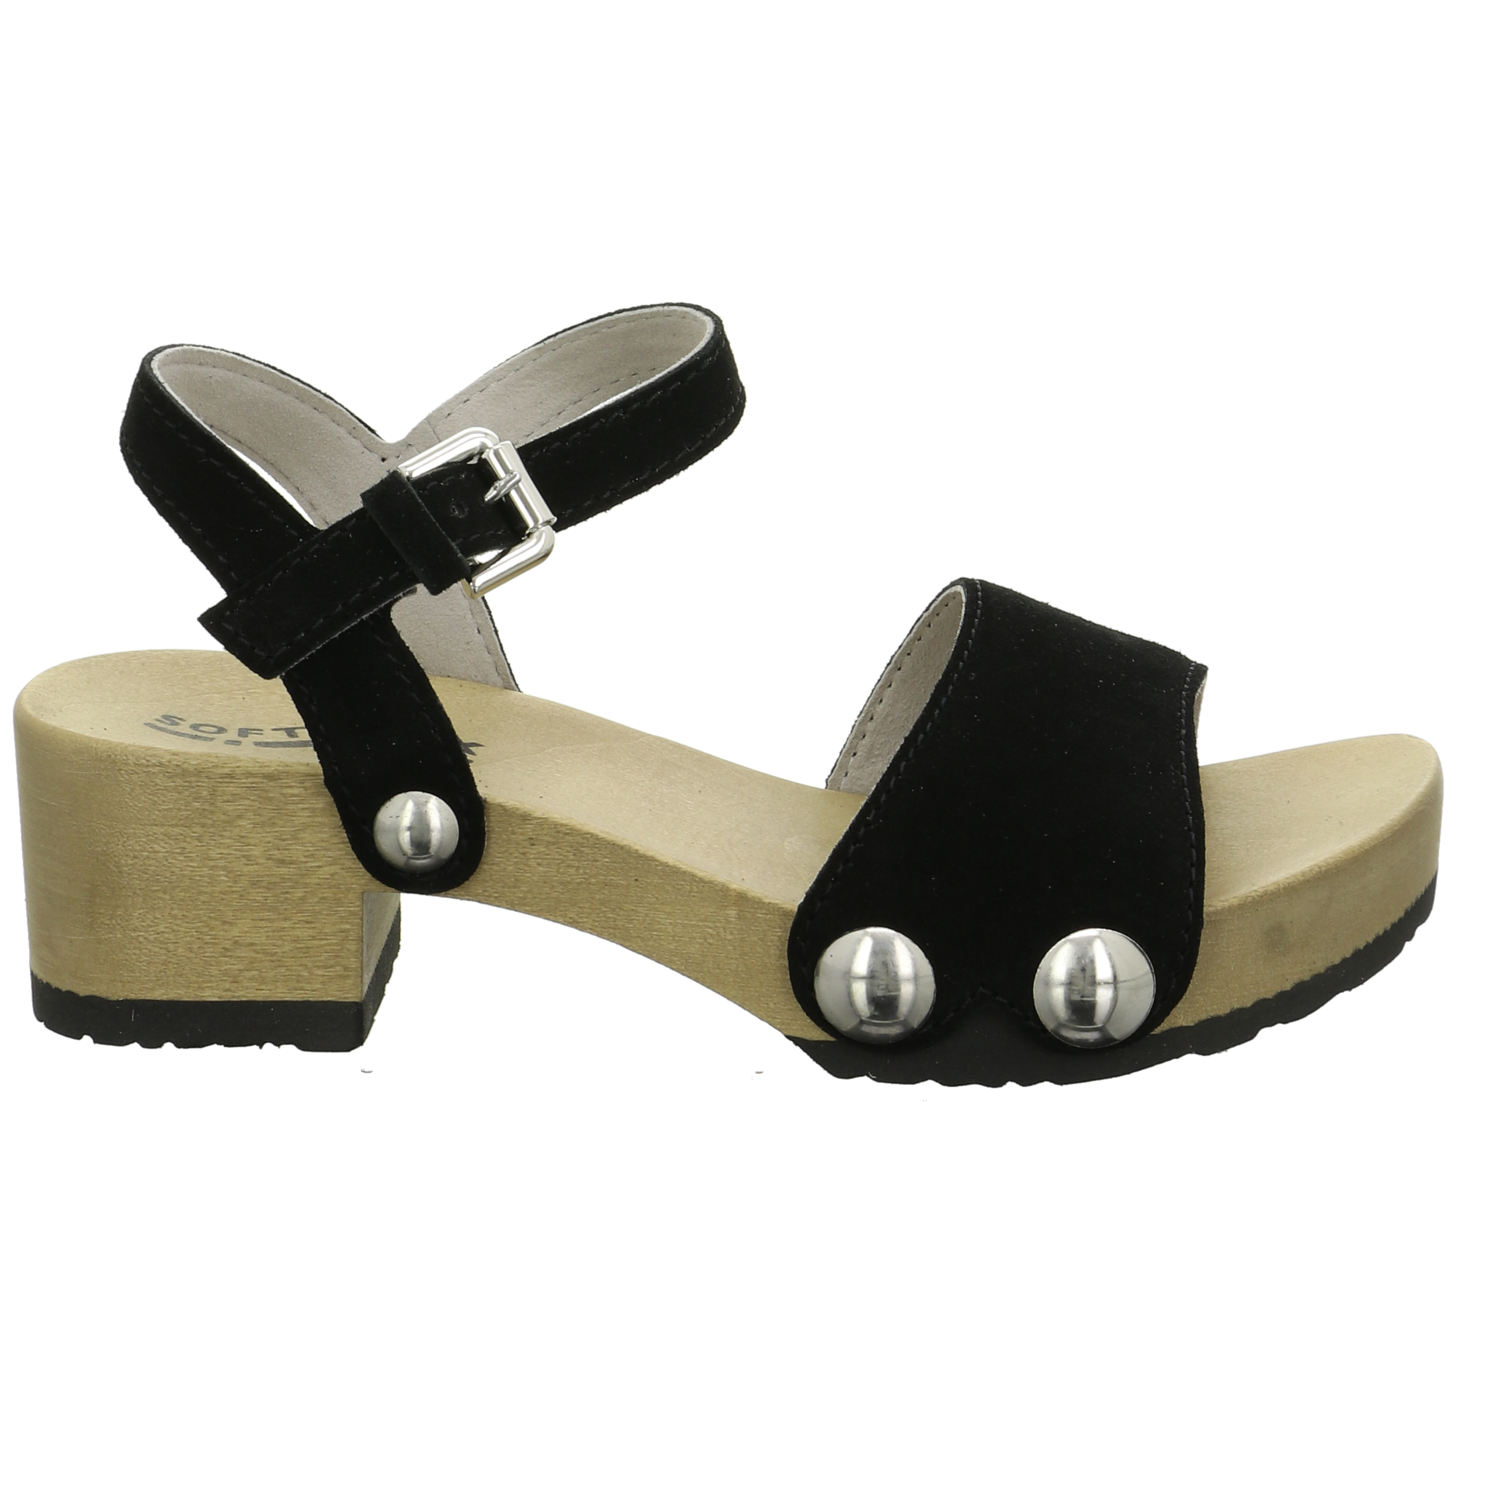 Softclox Sandalette bis 45 mm schwarz